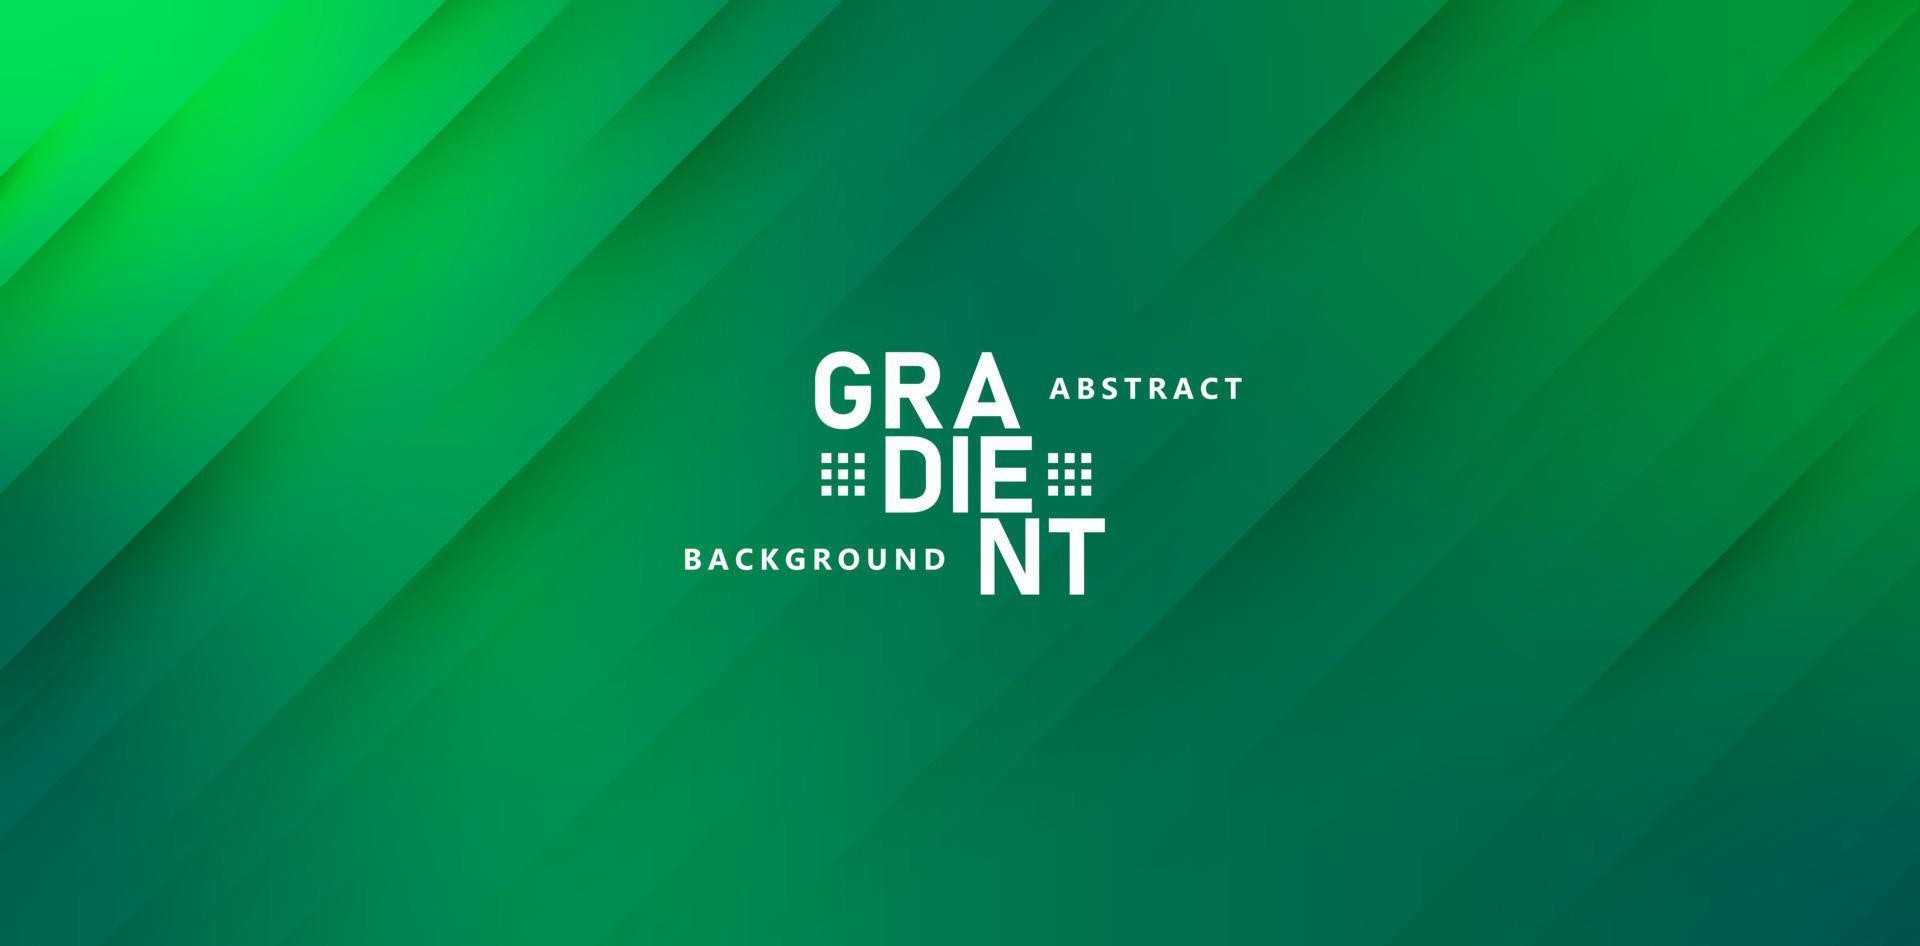 abstrakt gradient grön bakgrund med strålar för webbplatshuvud, målsida, reklambyråmarknadsföring, affärsskylt, företagsomslag, produktkoncept för lanseringsevenemang, designelementflödeskoncept vektor